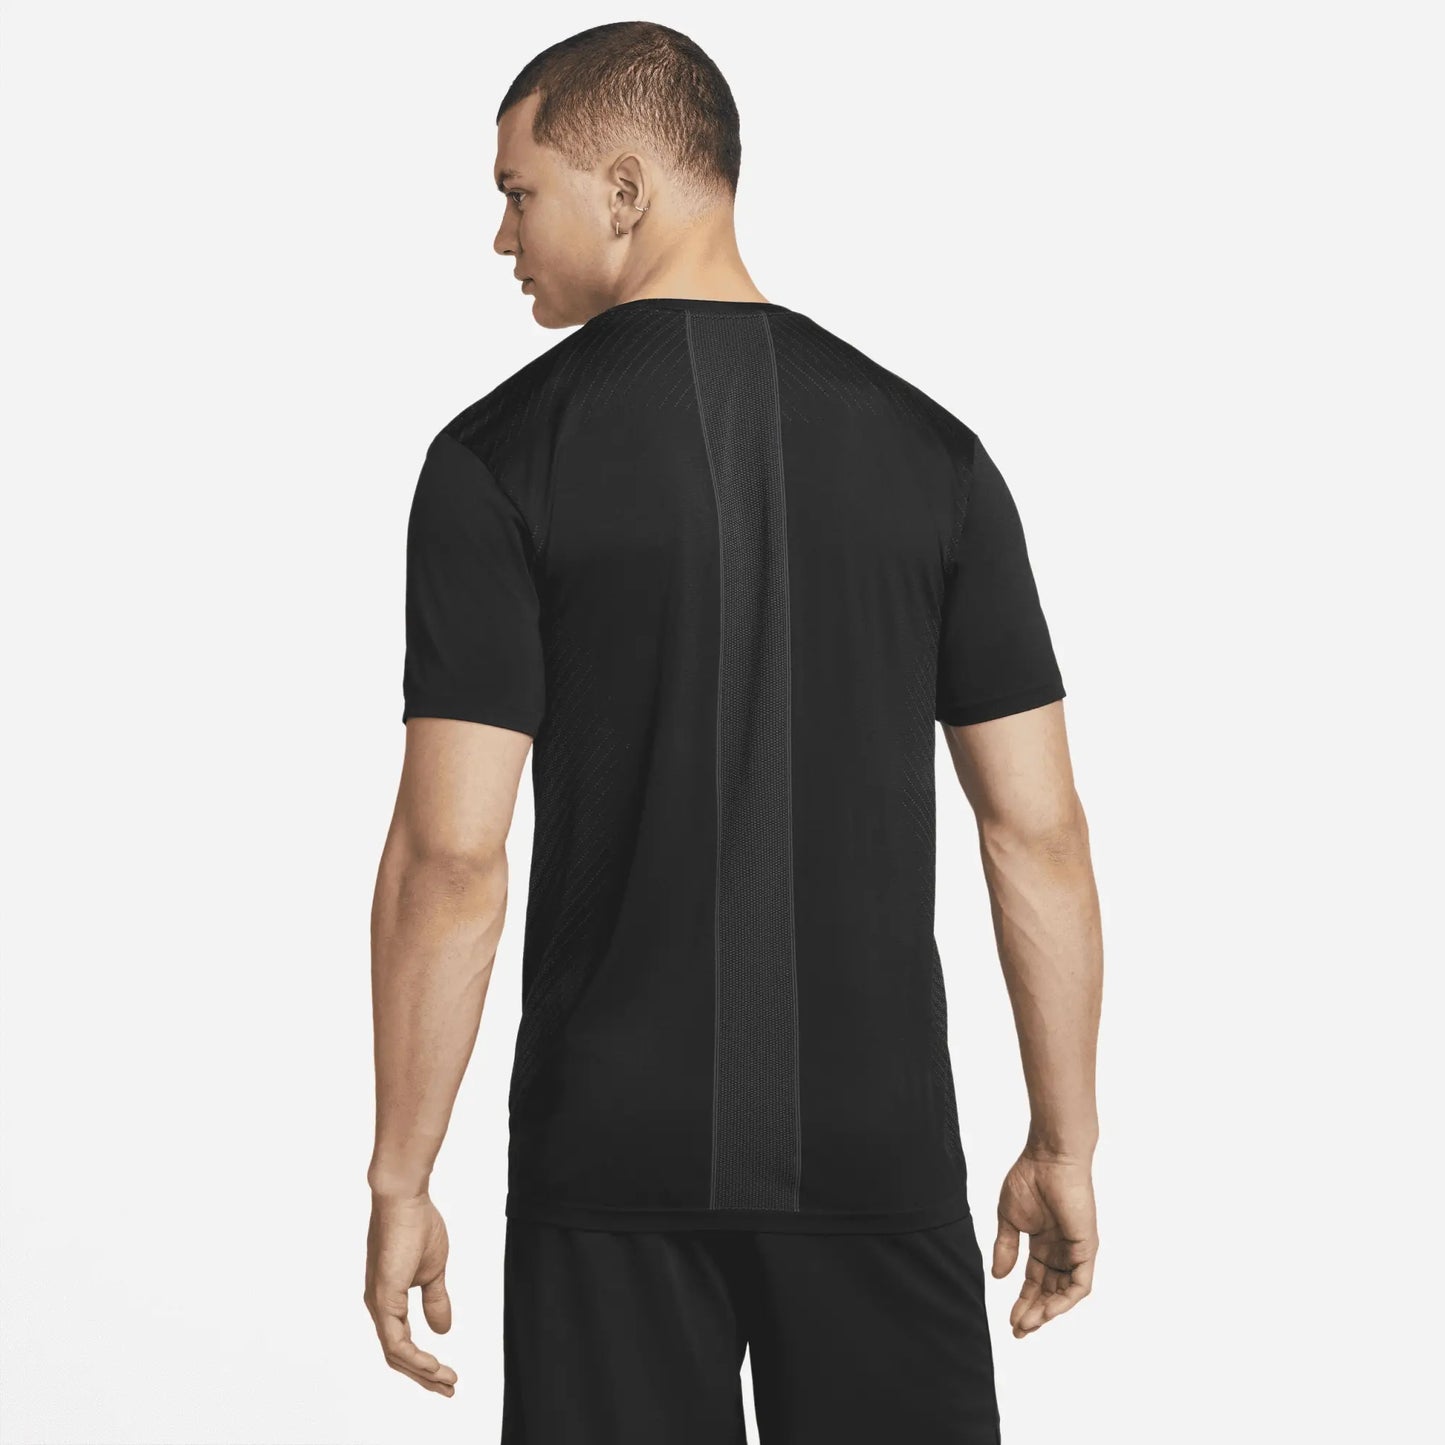 Nike Dri-FIT Men's Seamless Training T-Shirt - Black